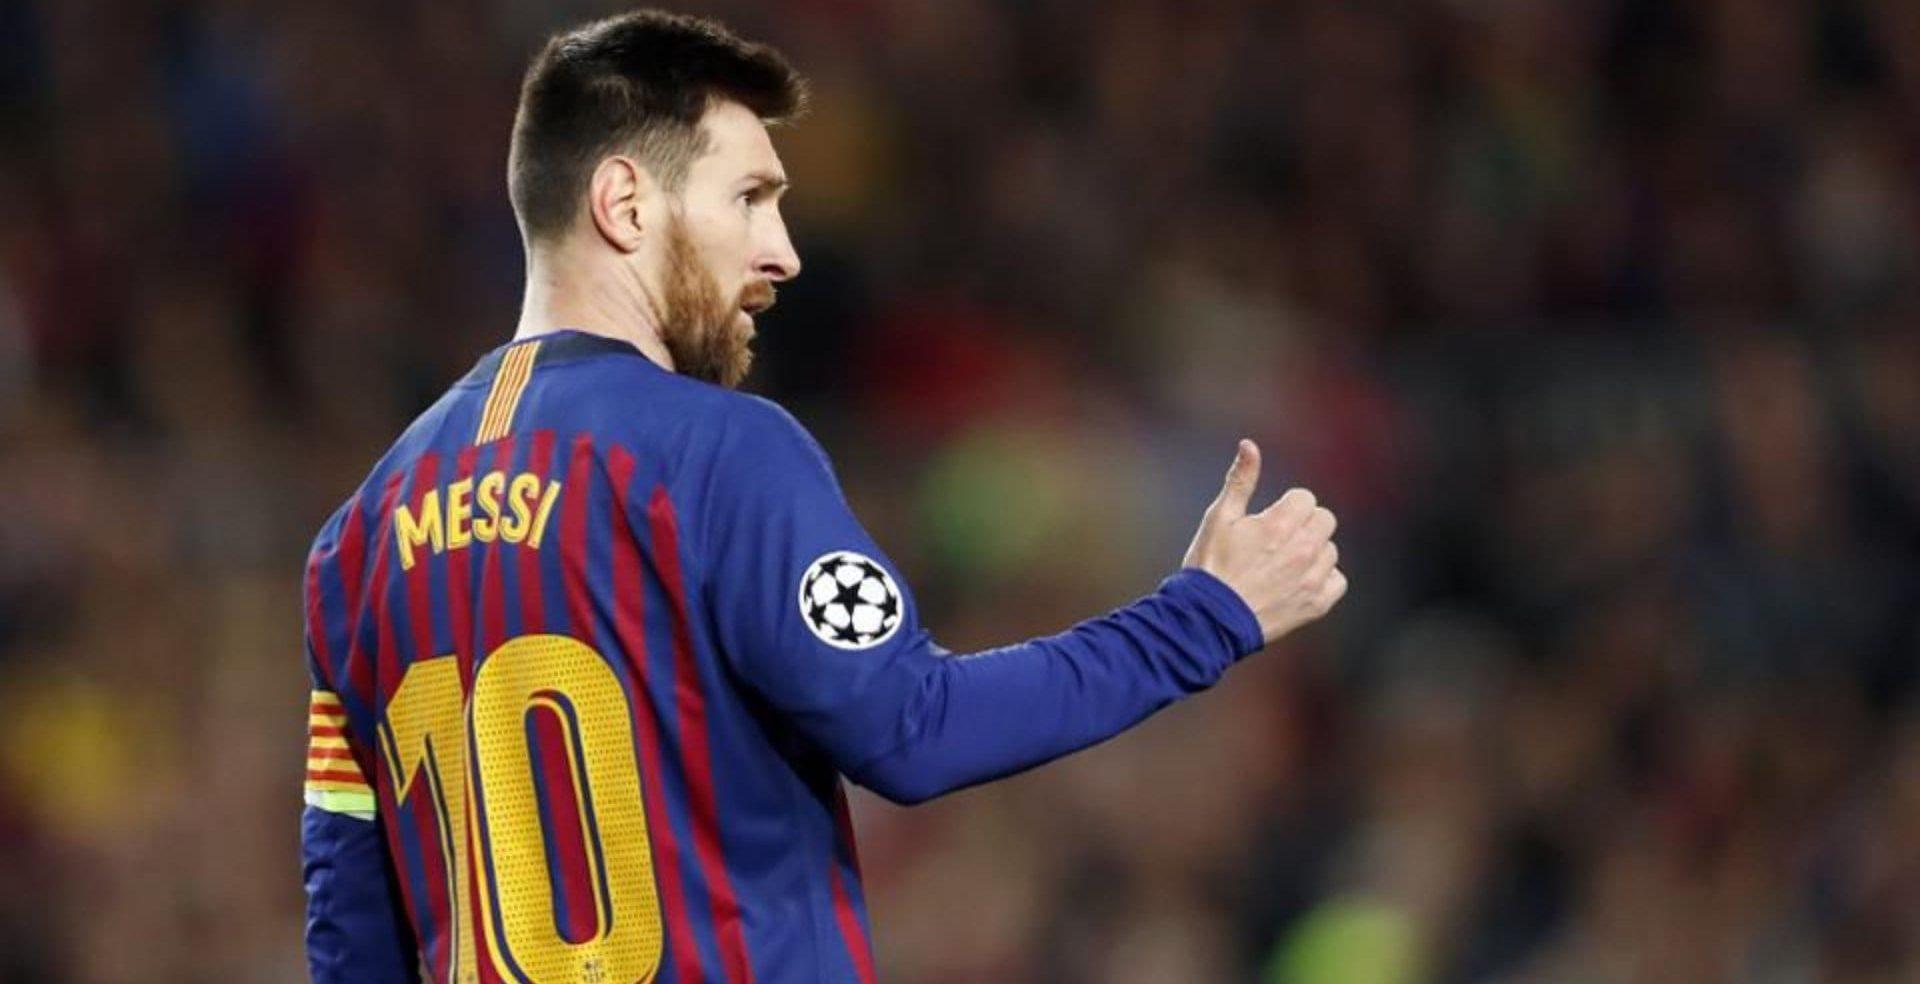 Messi alerta sobre coronavírus: 'Momento de ser responsável e ficar em casa'